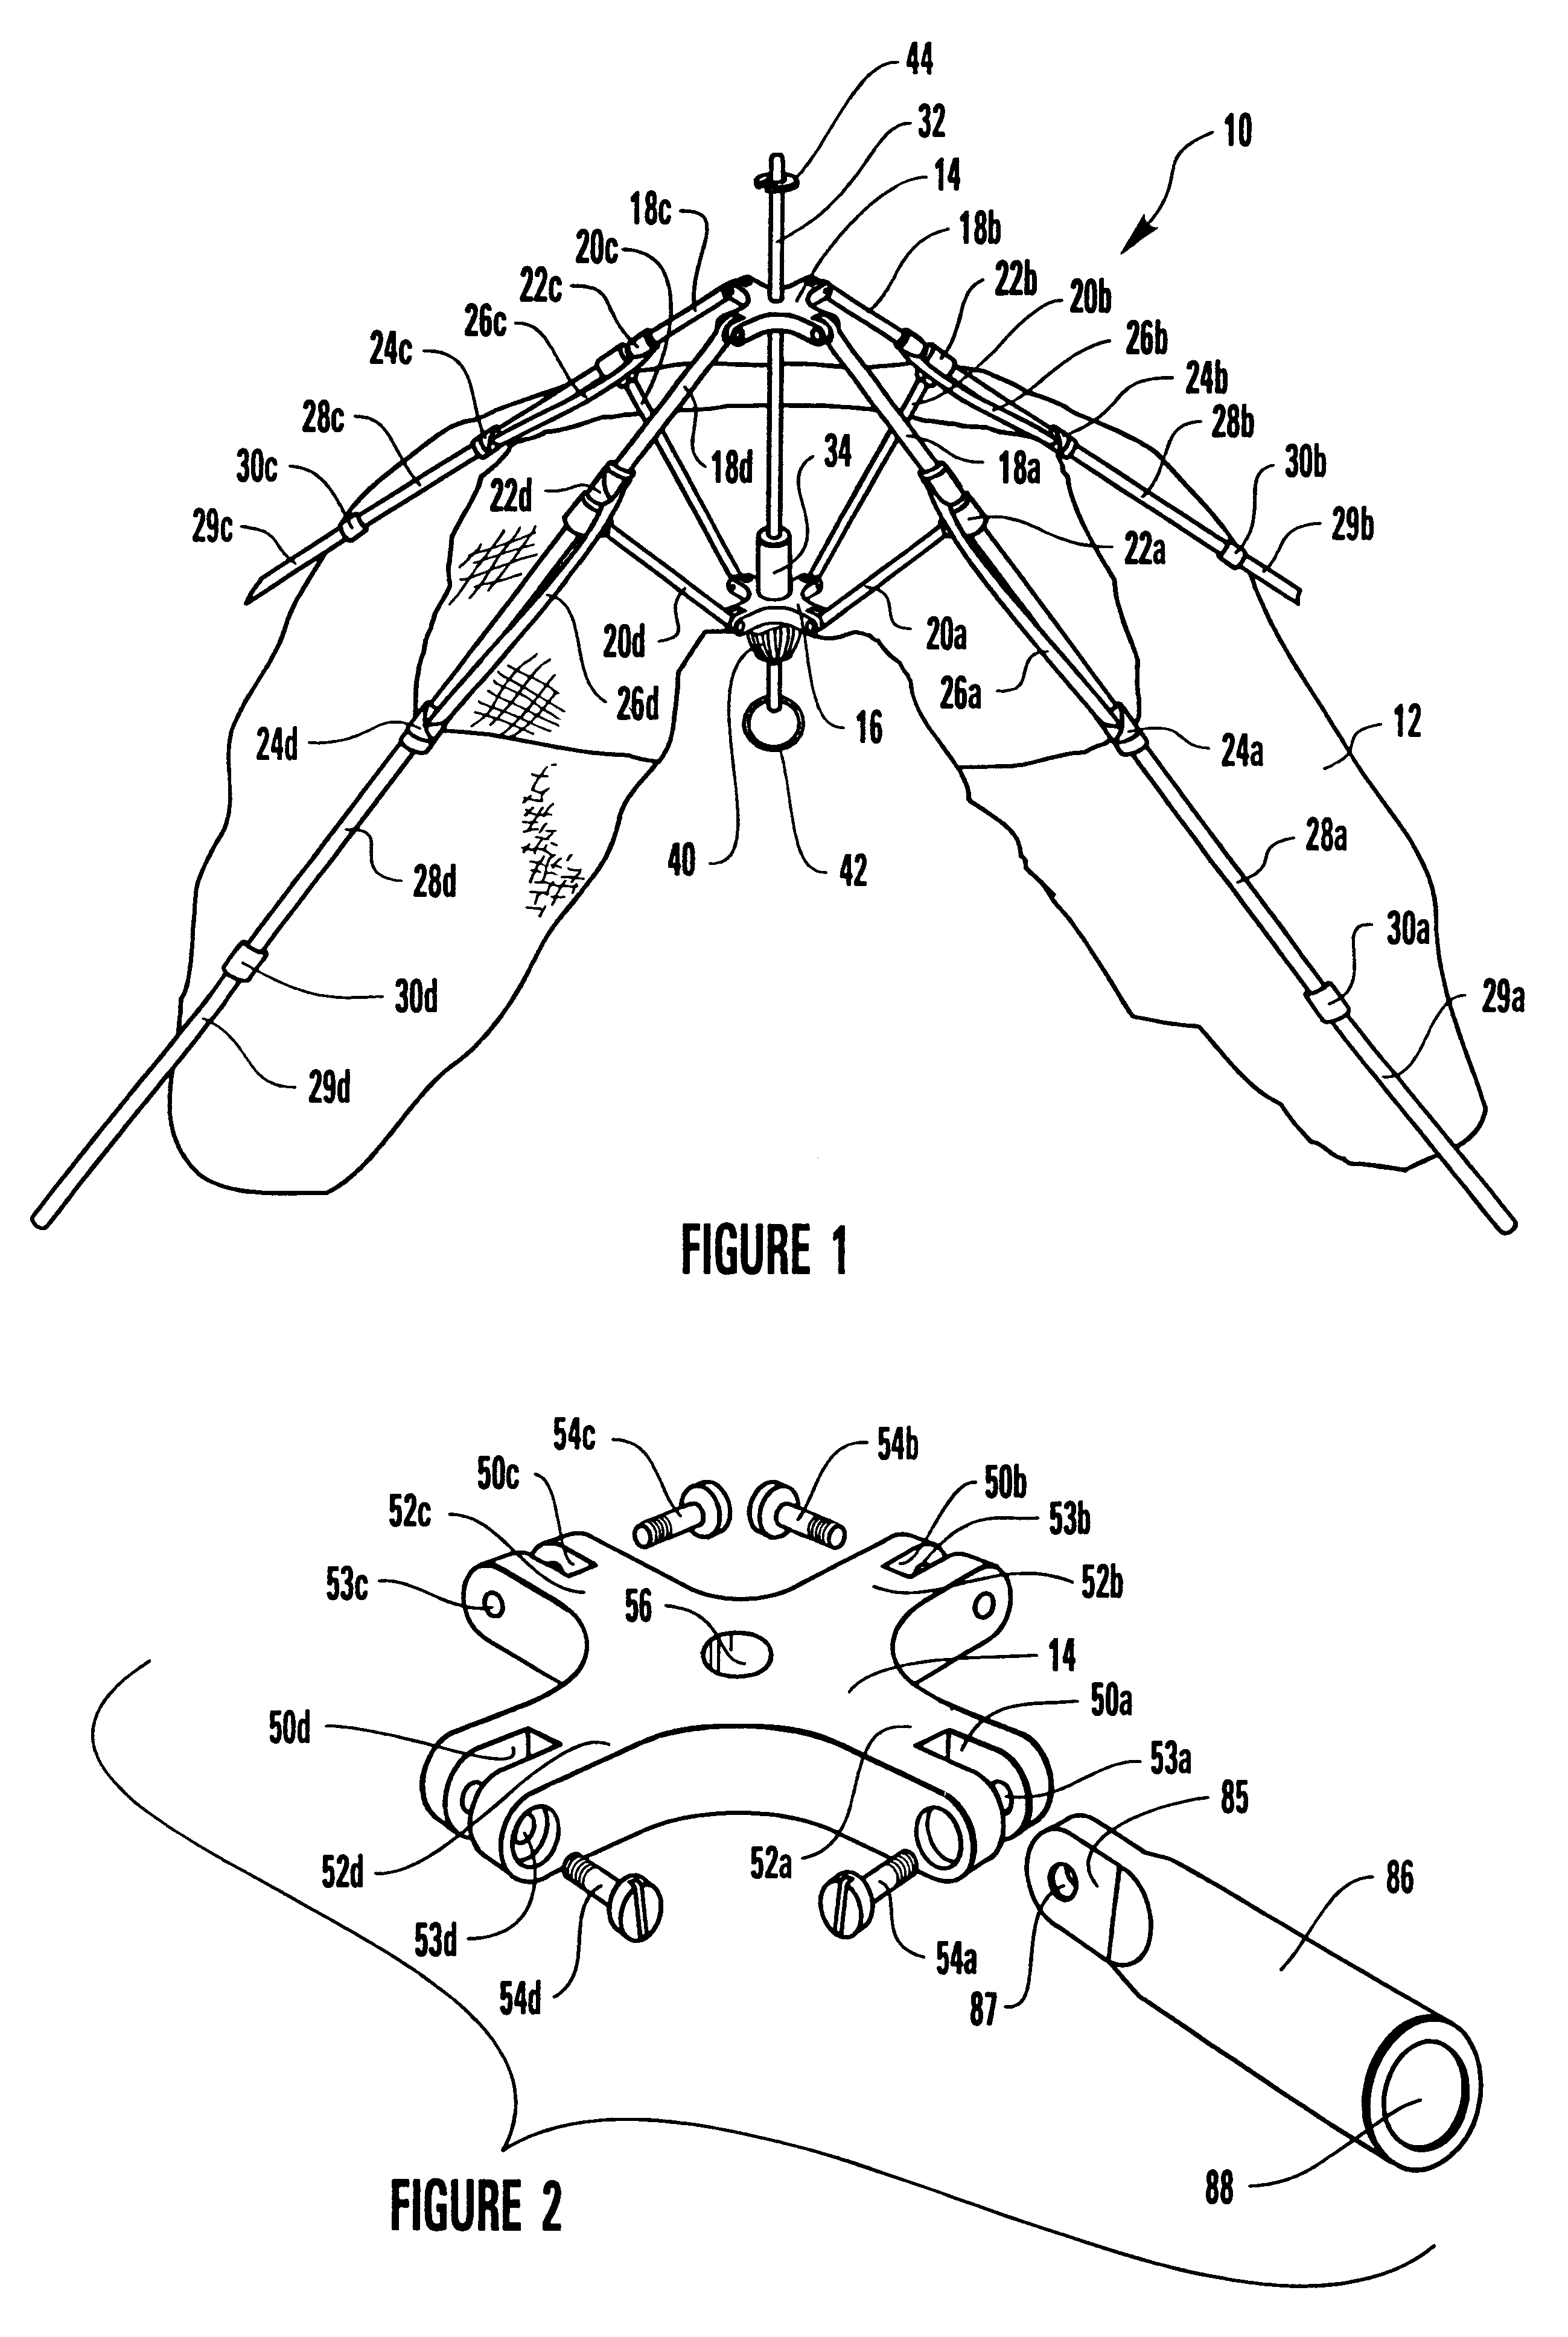 Umbrella-type tent apparatus and method